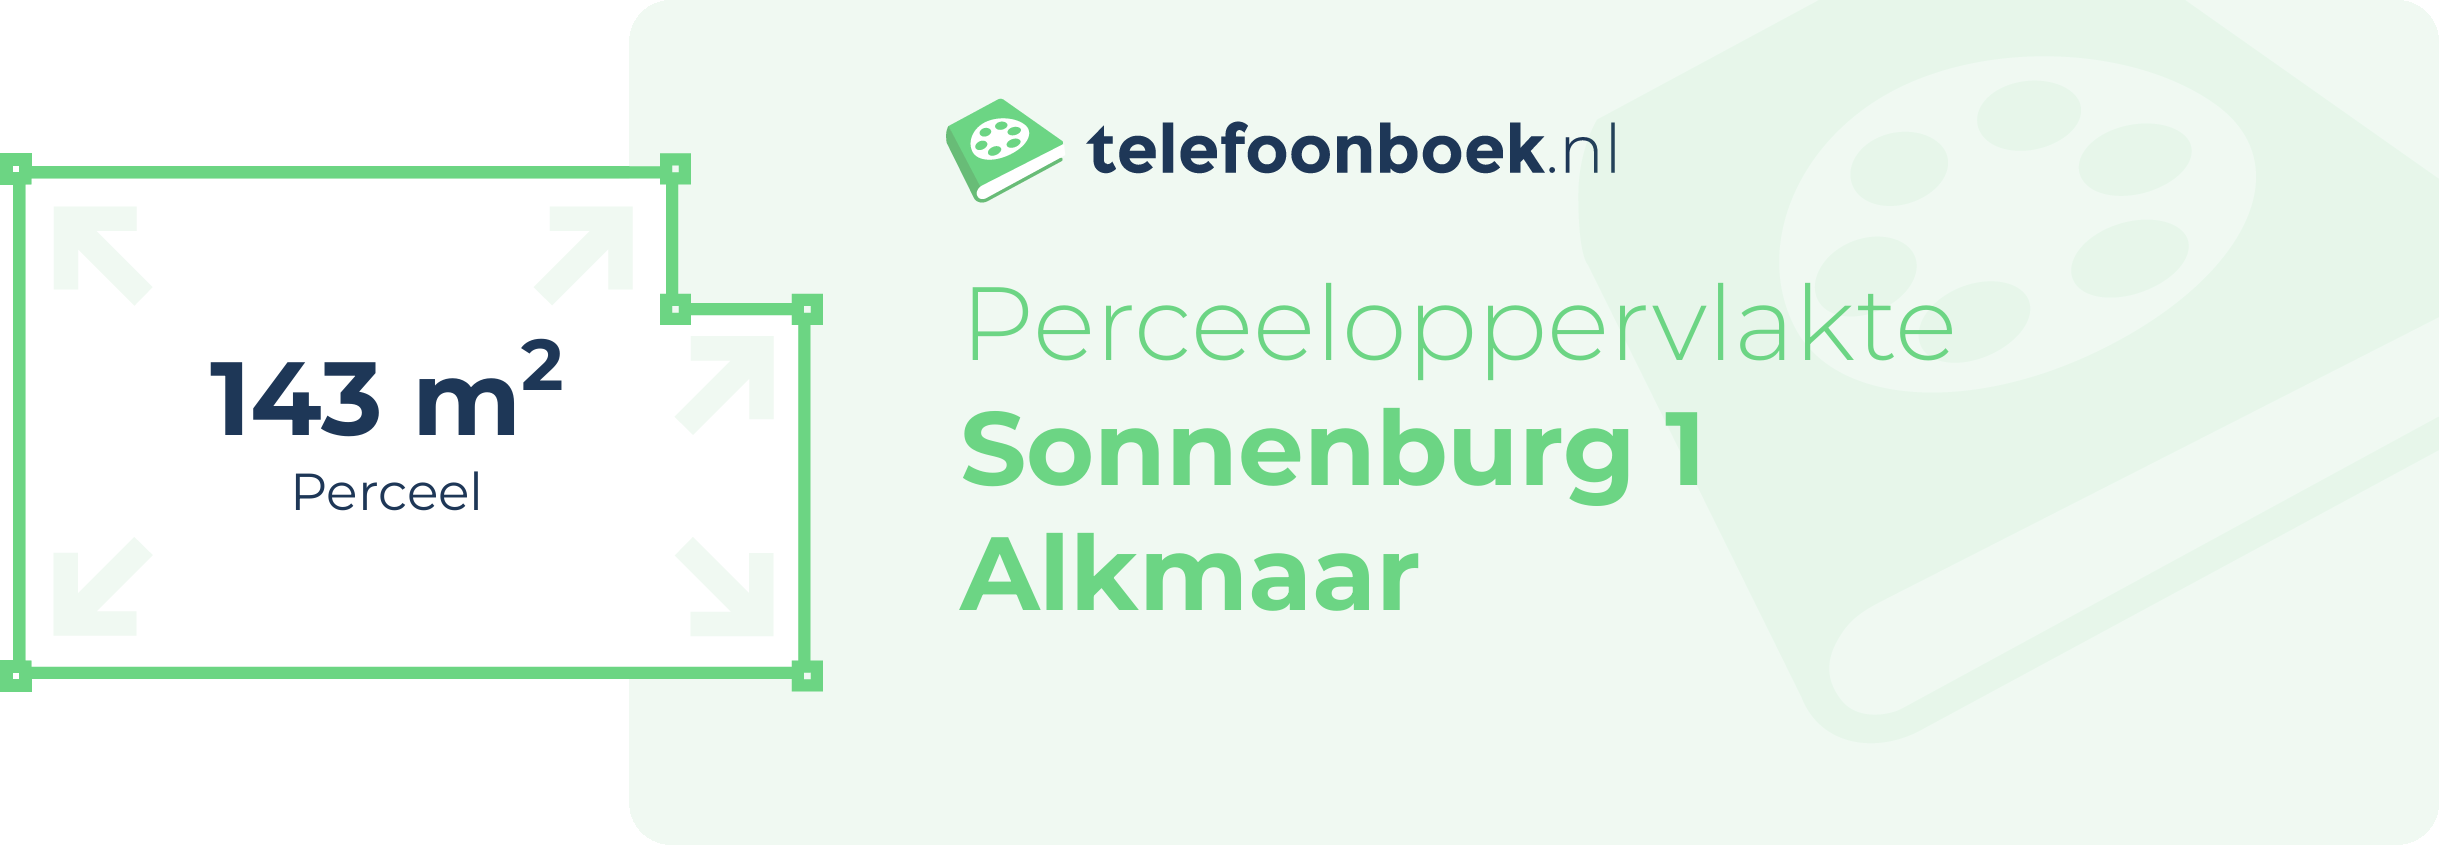 Perceeloppervlakte Sonnenburg 1 Alkmaar